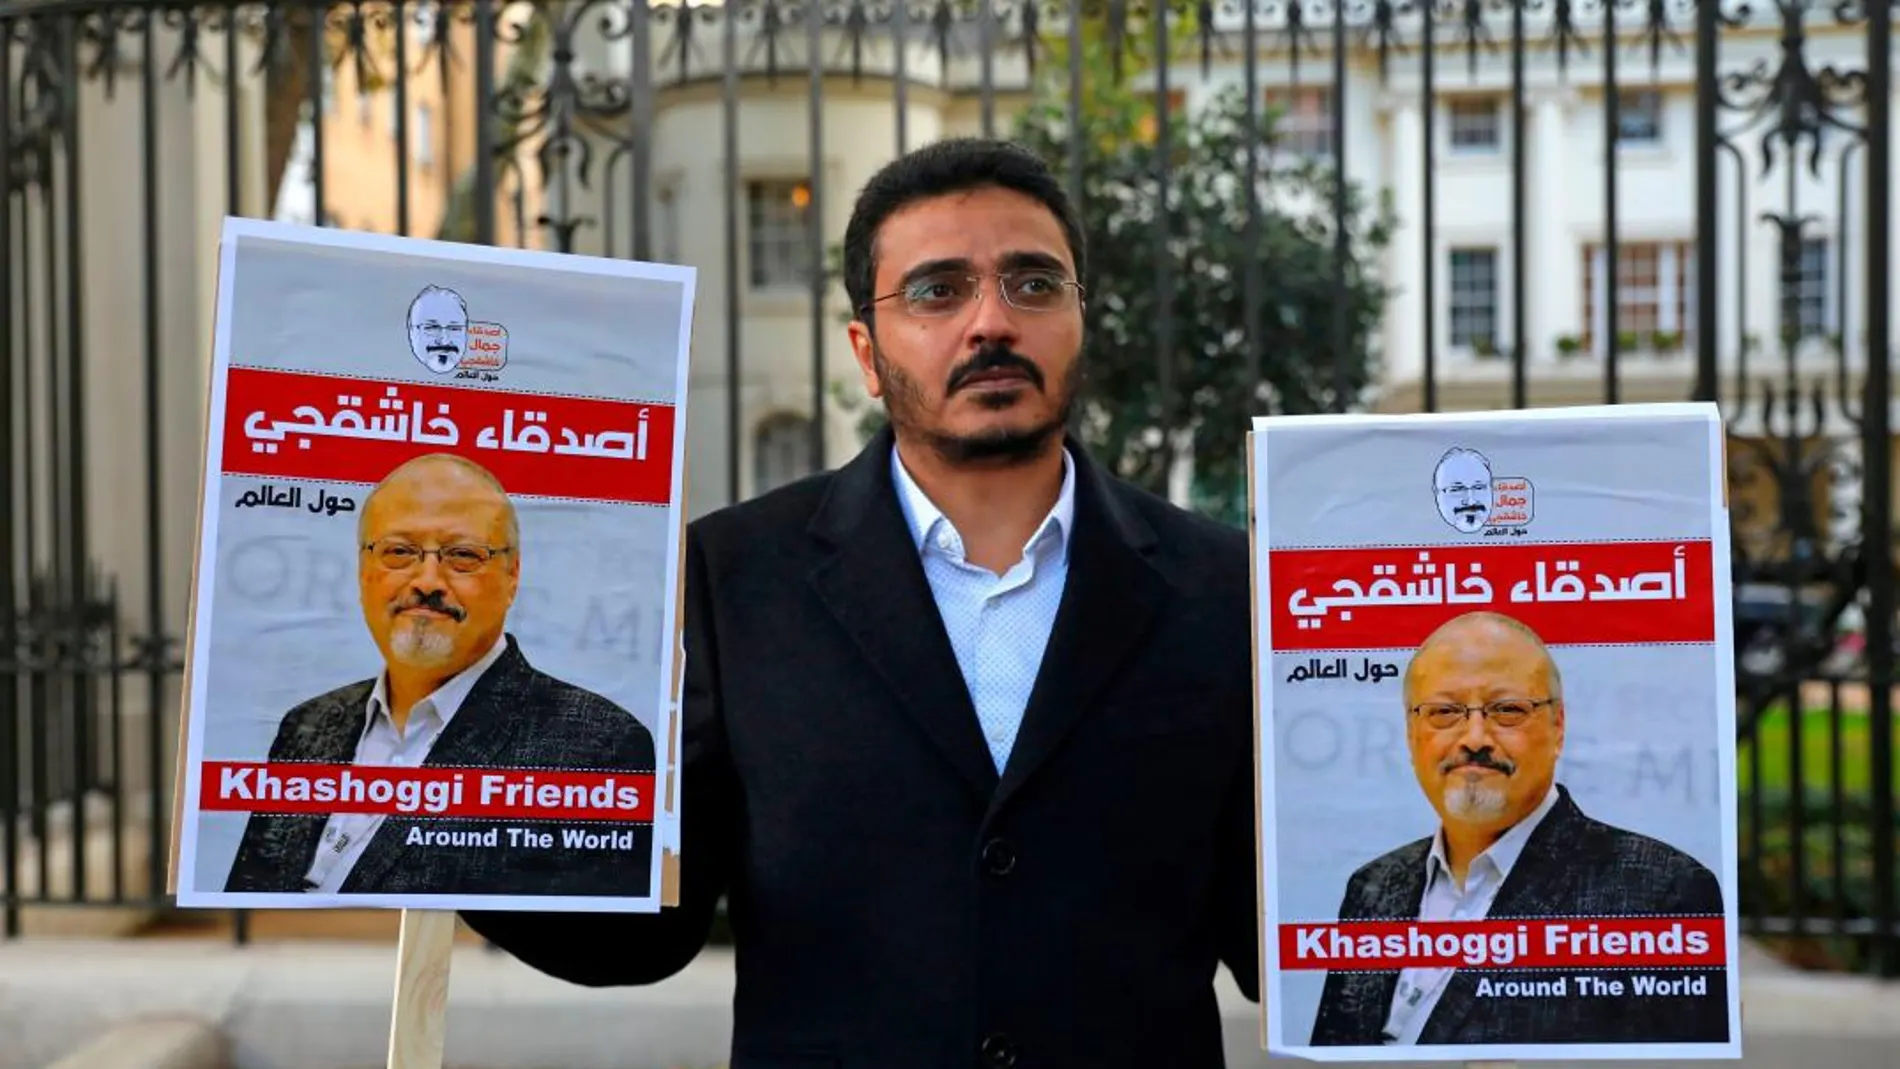 Un hombre protesta por el asesinato de Jamal Khashoggi en la embajada de Turquía en Londres/Foto: Ap